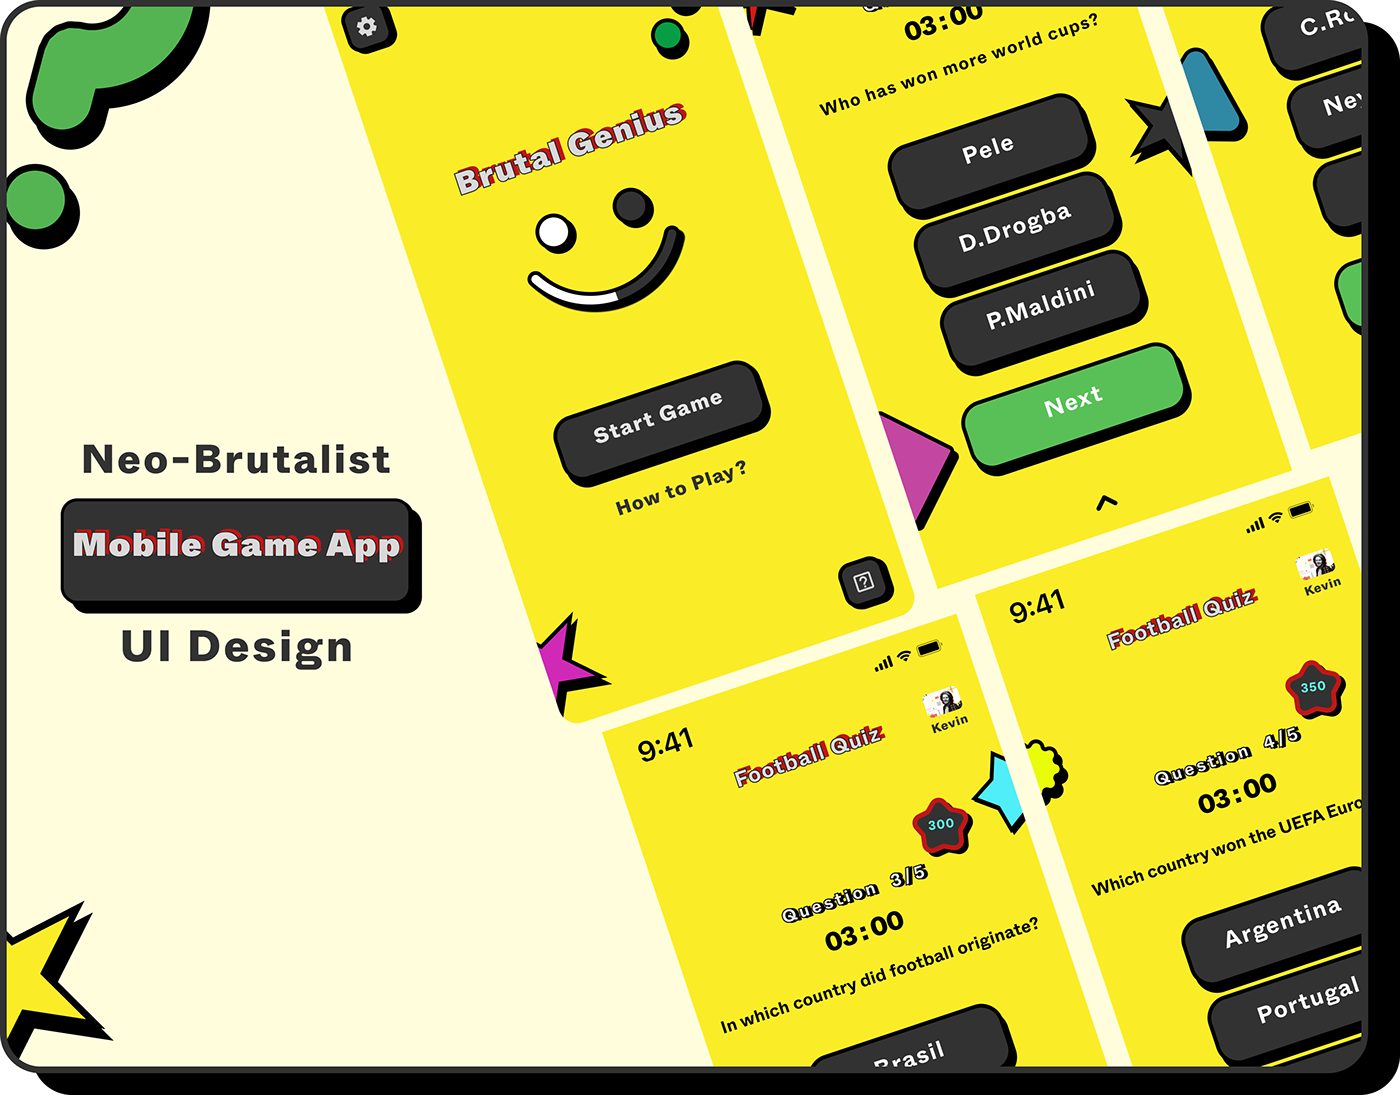 Game App Design Quiz Game neobrutalism Brutalist app ui design Mobile app UX UI DESign